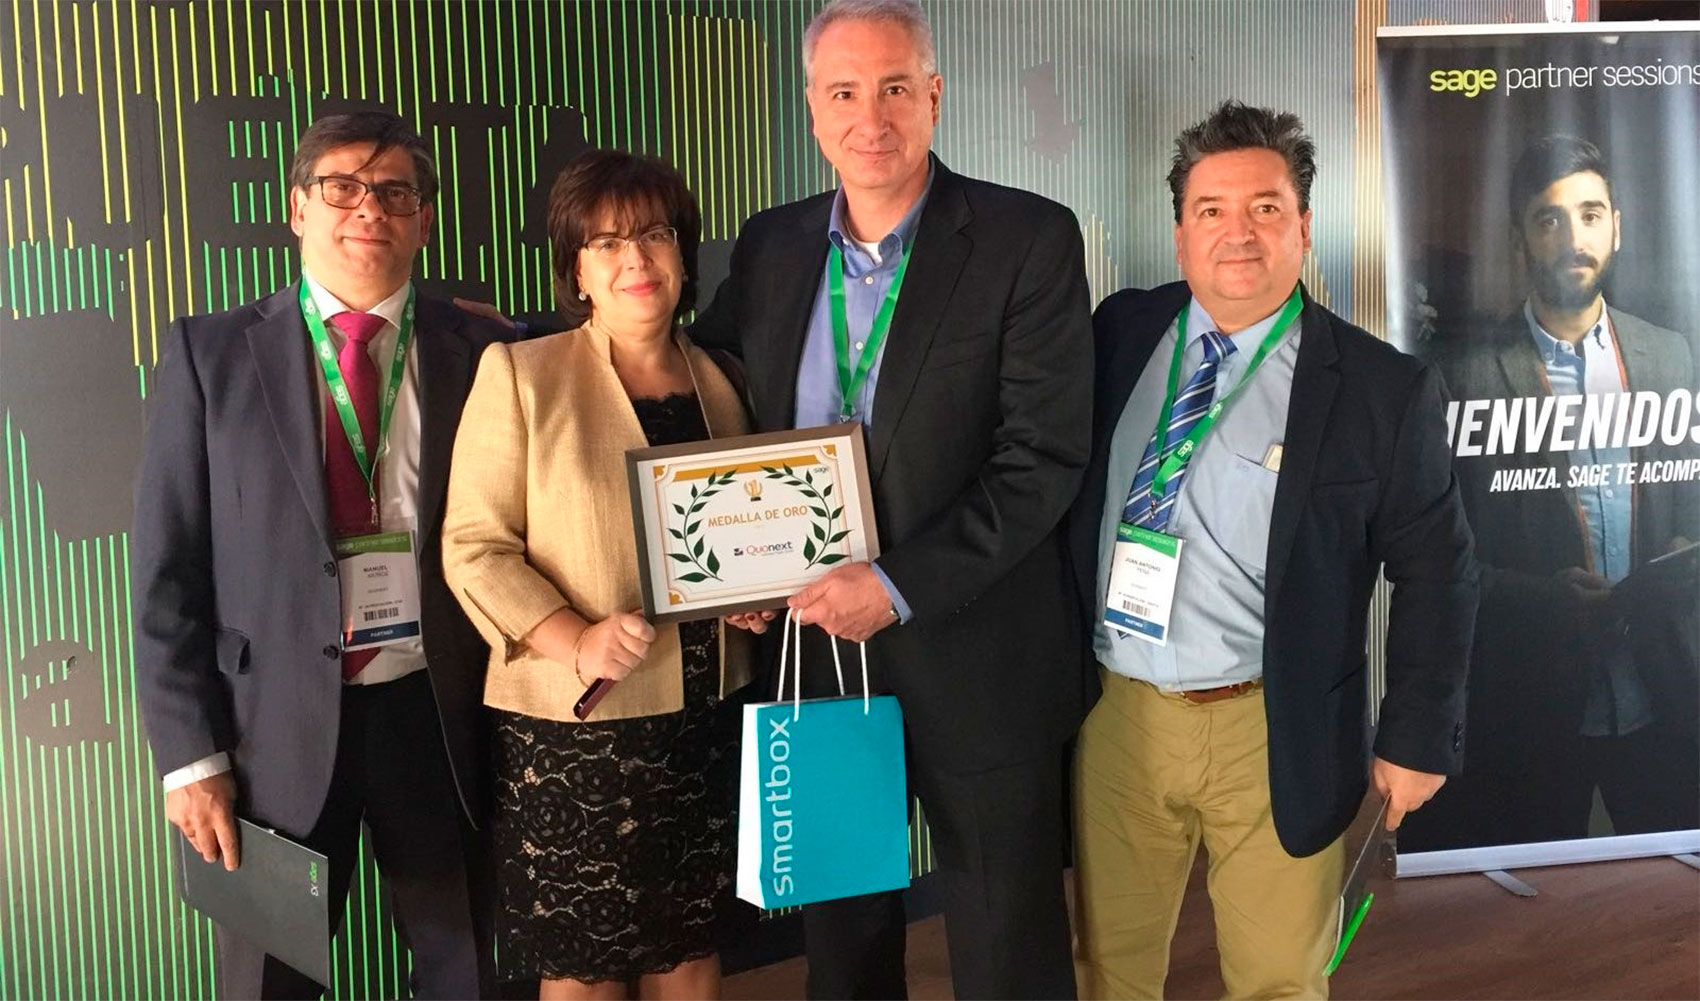 Juan Antonio Herrero, CEO de Quonext, recibe el premio Sage X3 de manos de Cristina lvarez, Sales & Channel Manager de Sage...